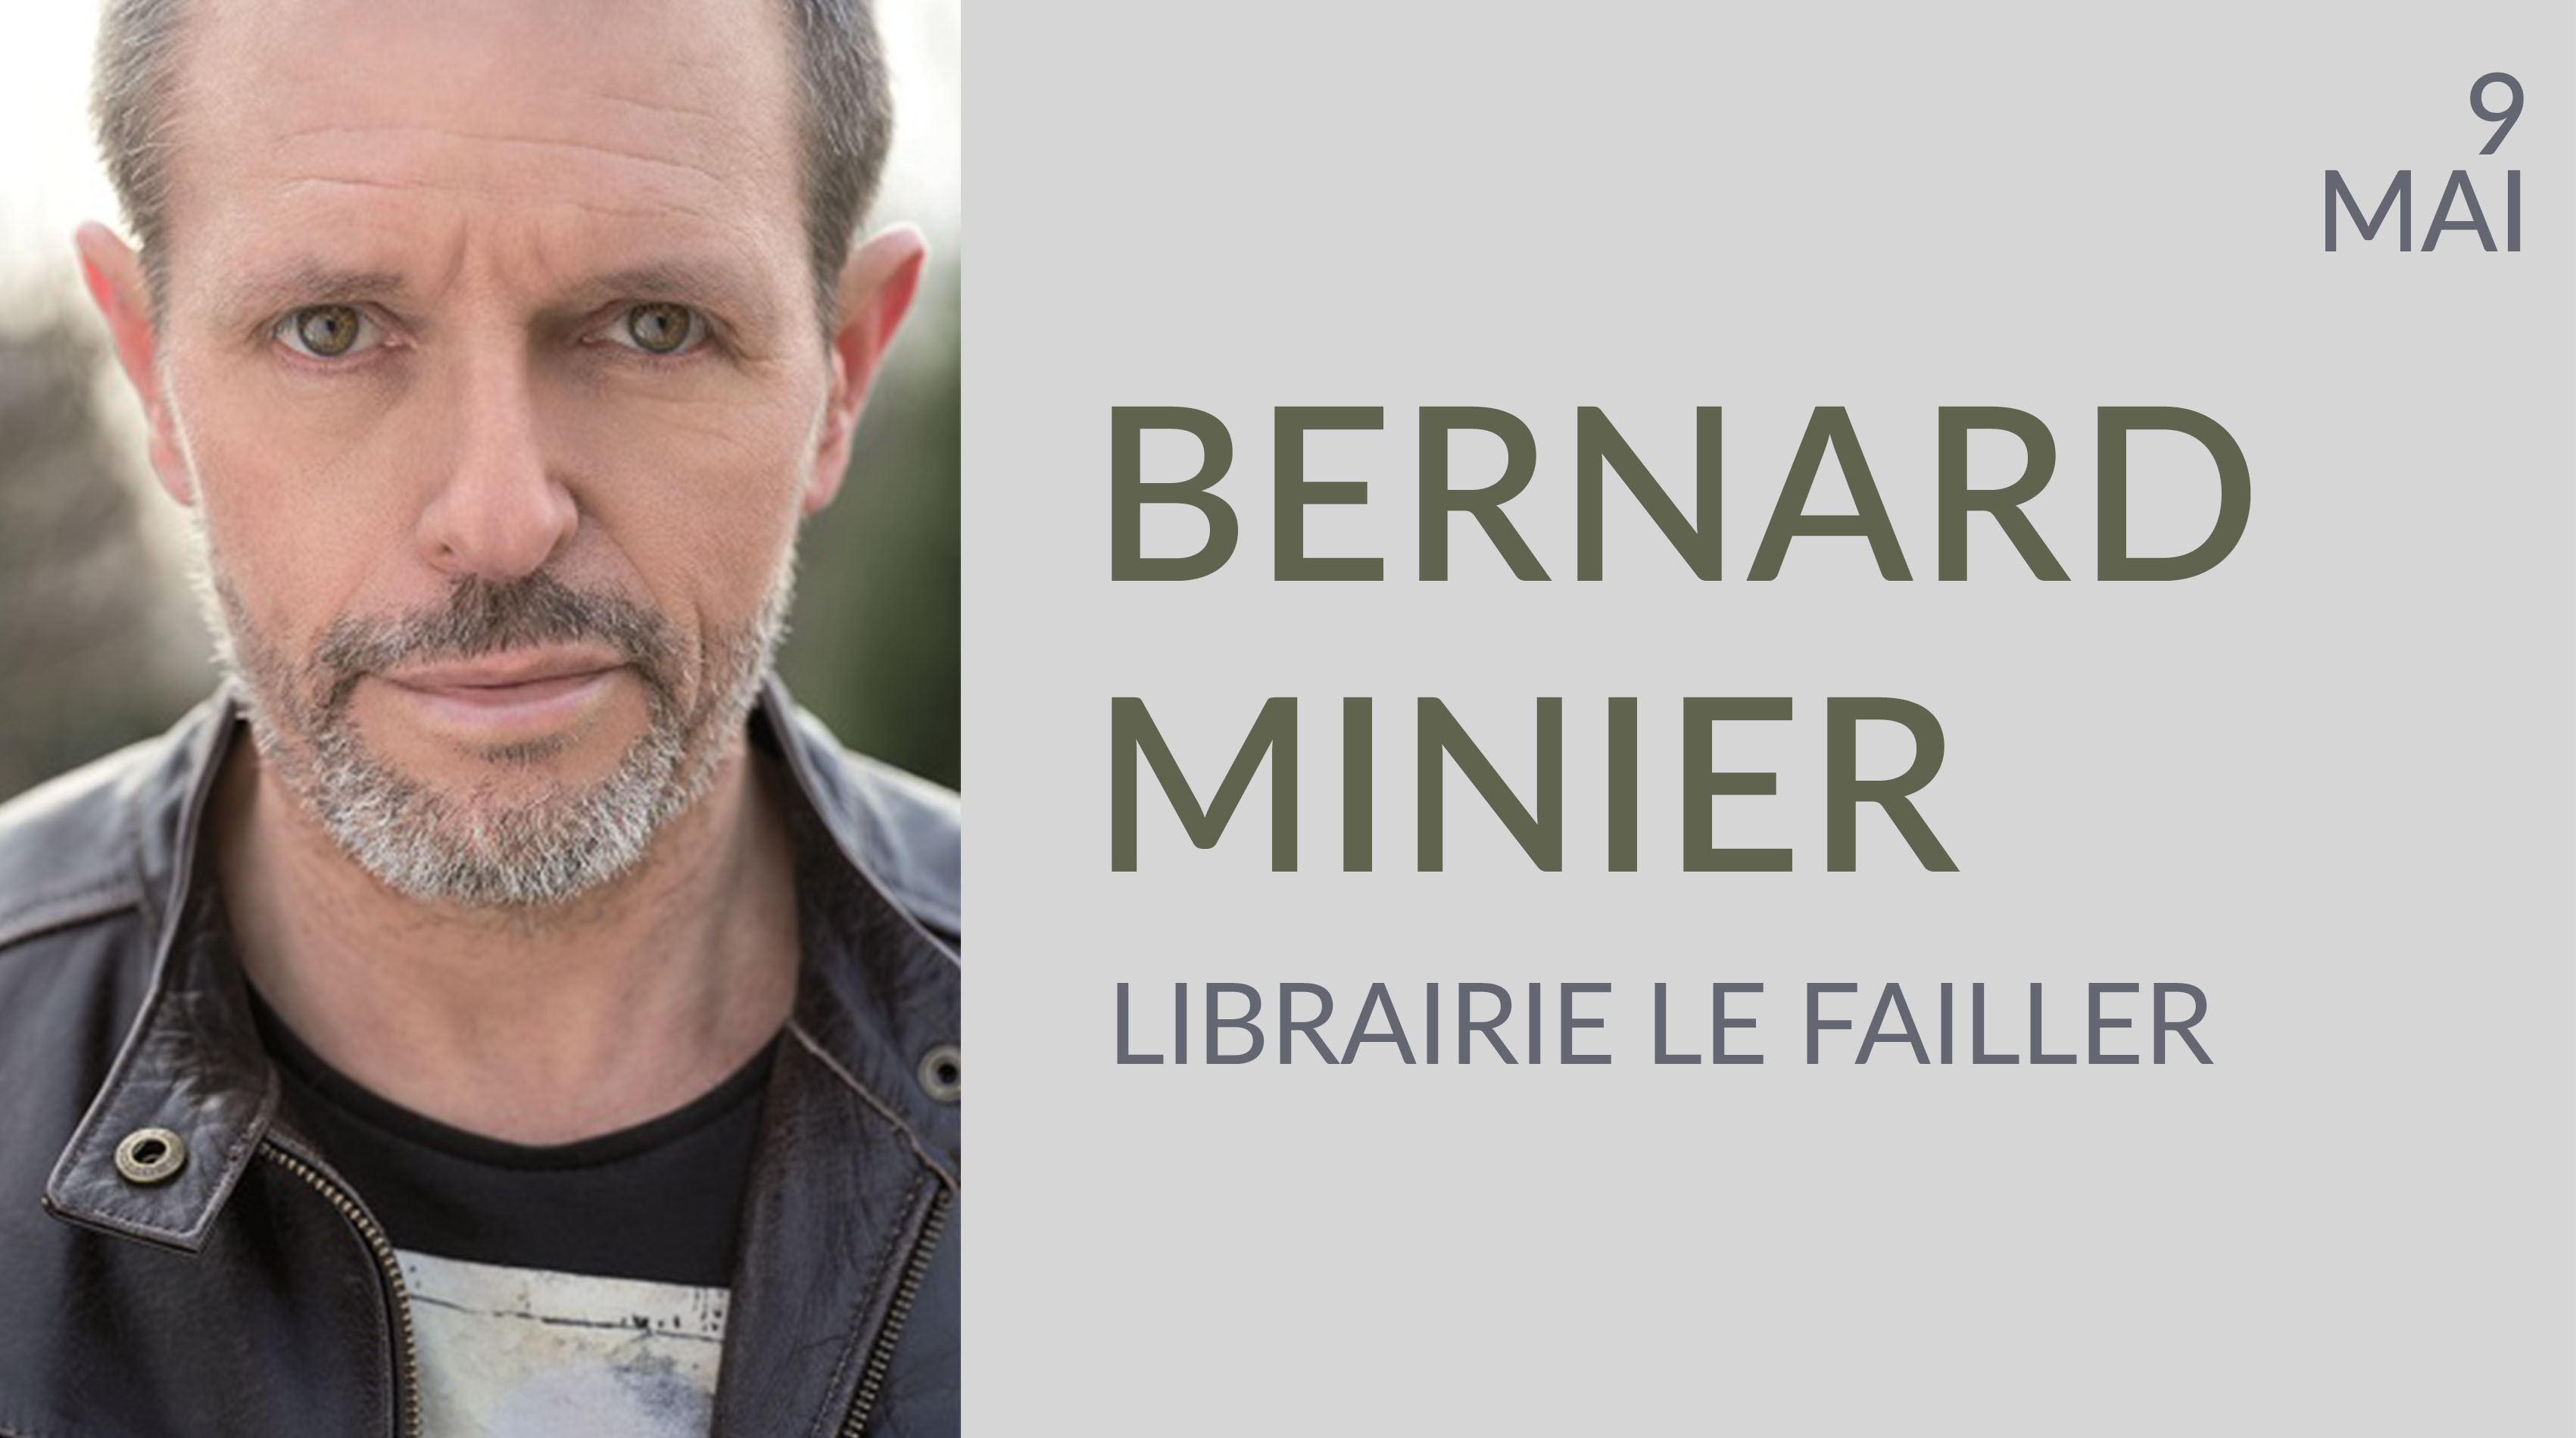 BERNARD MINIER À LA LIBRAIRIE LE FAILLER -  RENNES